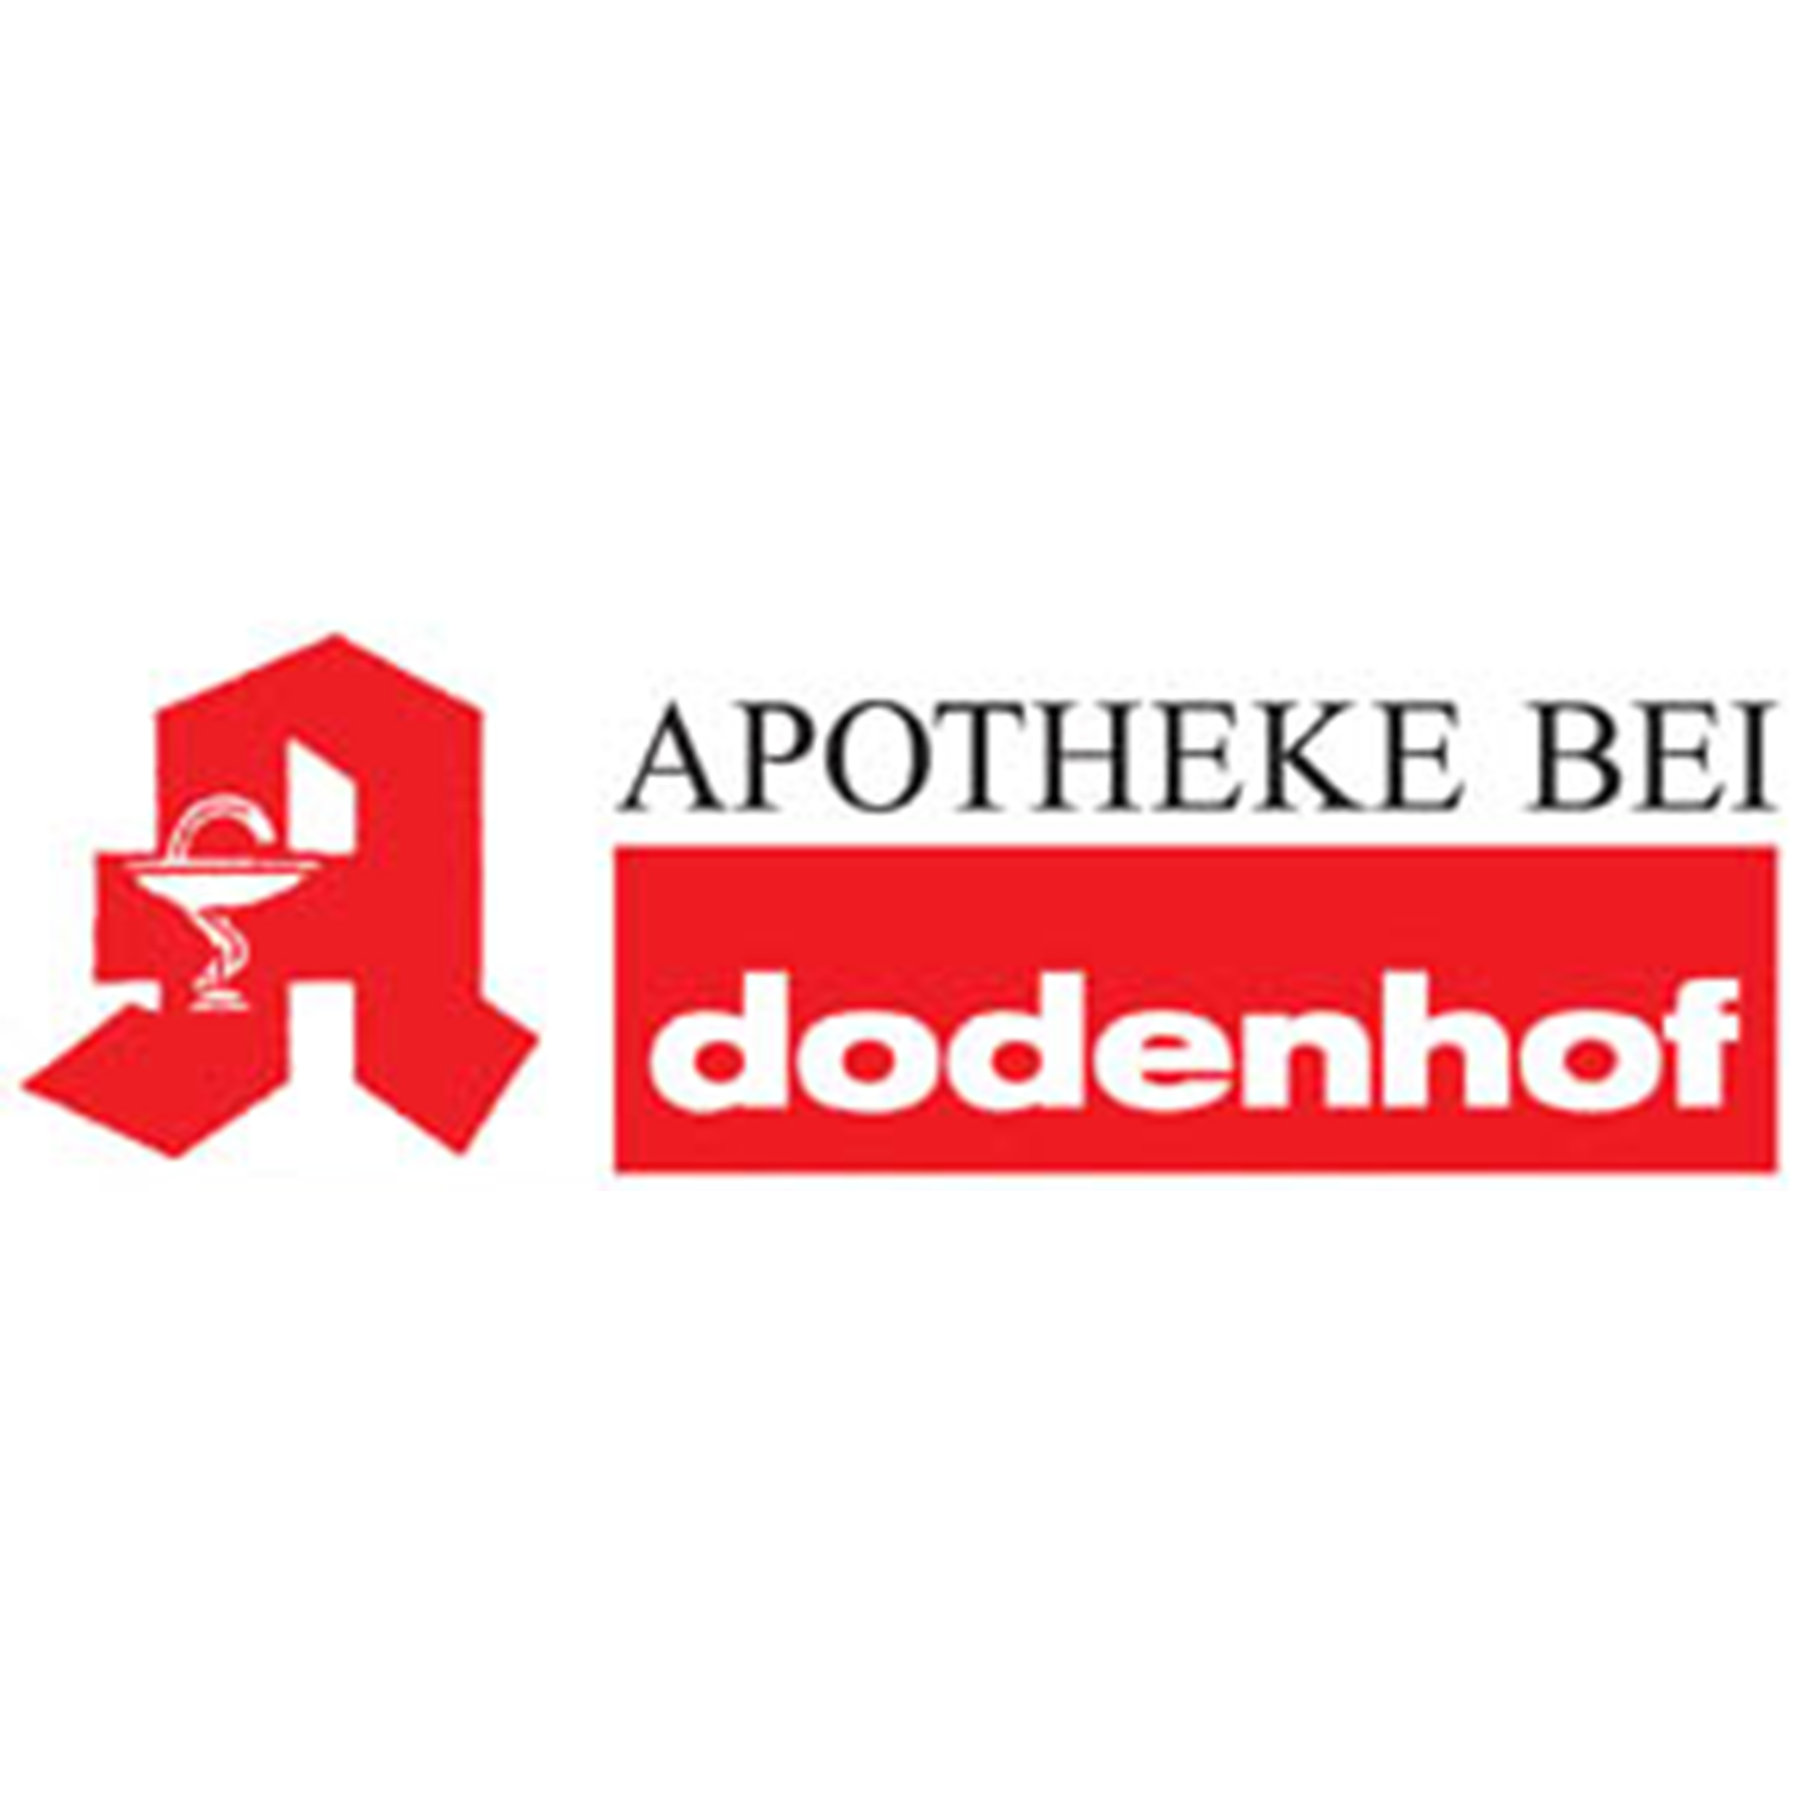 Apotheke bei Dodenhof in Ottersberg - Logo